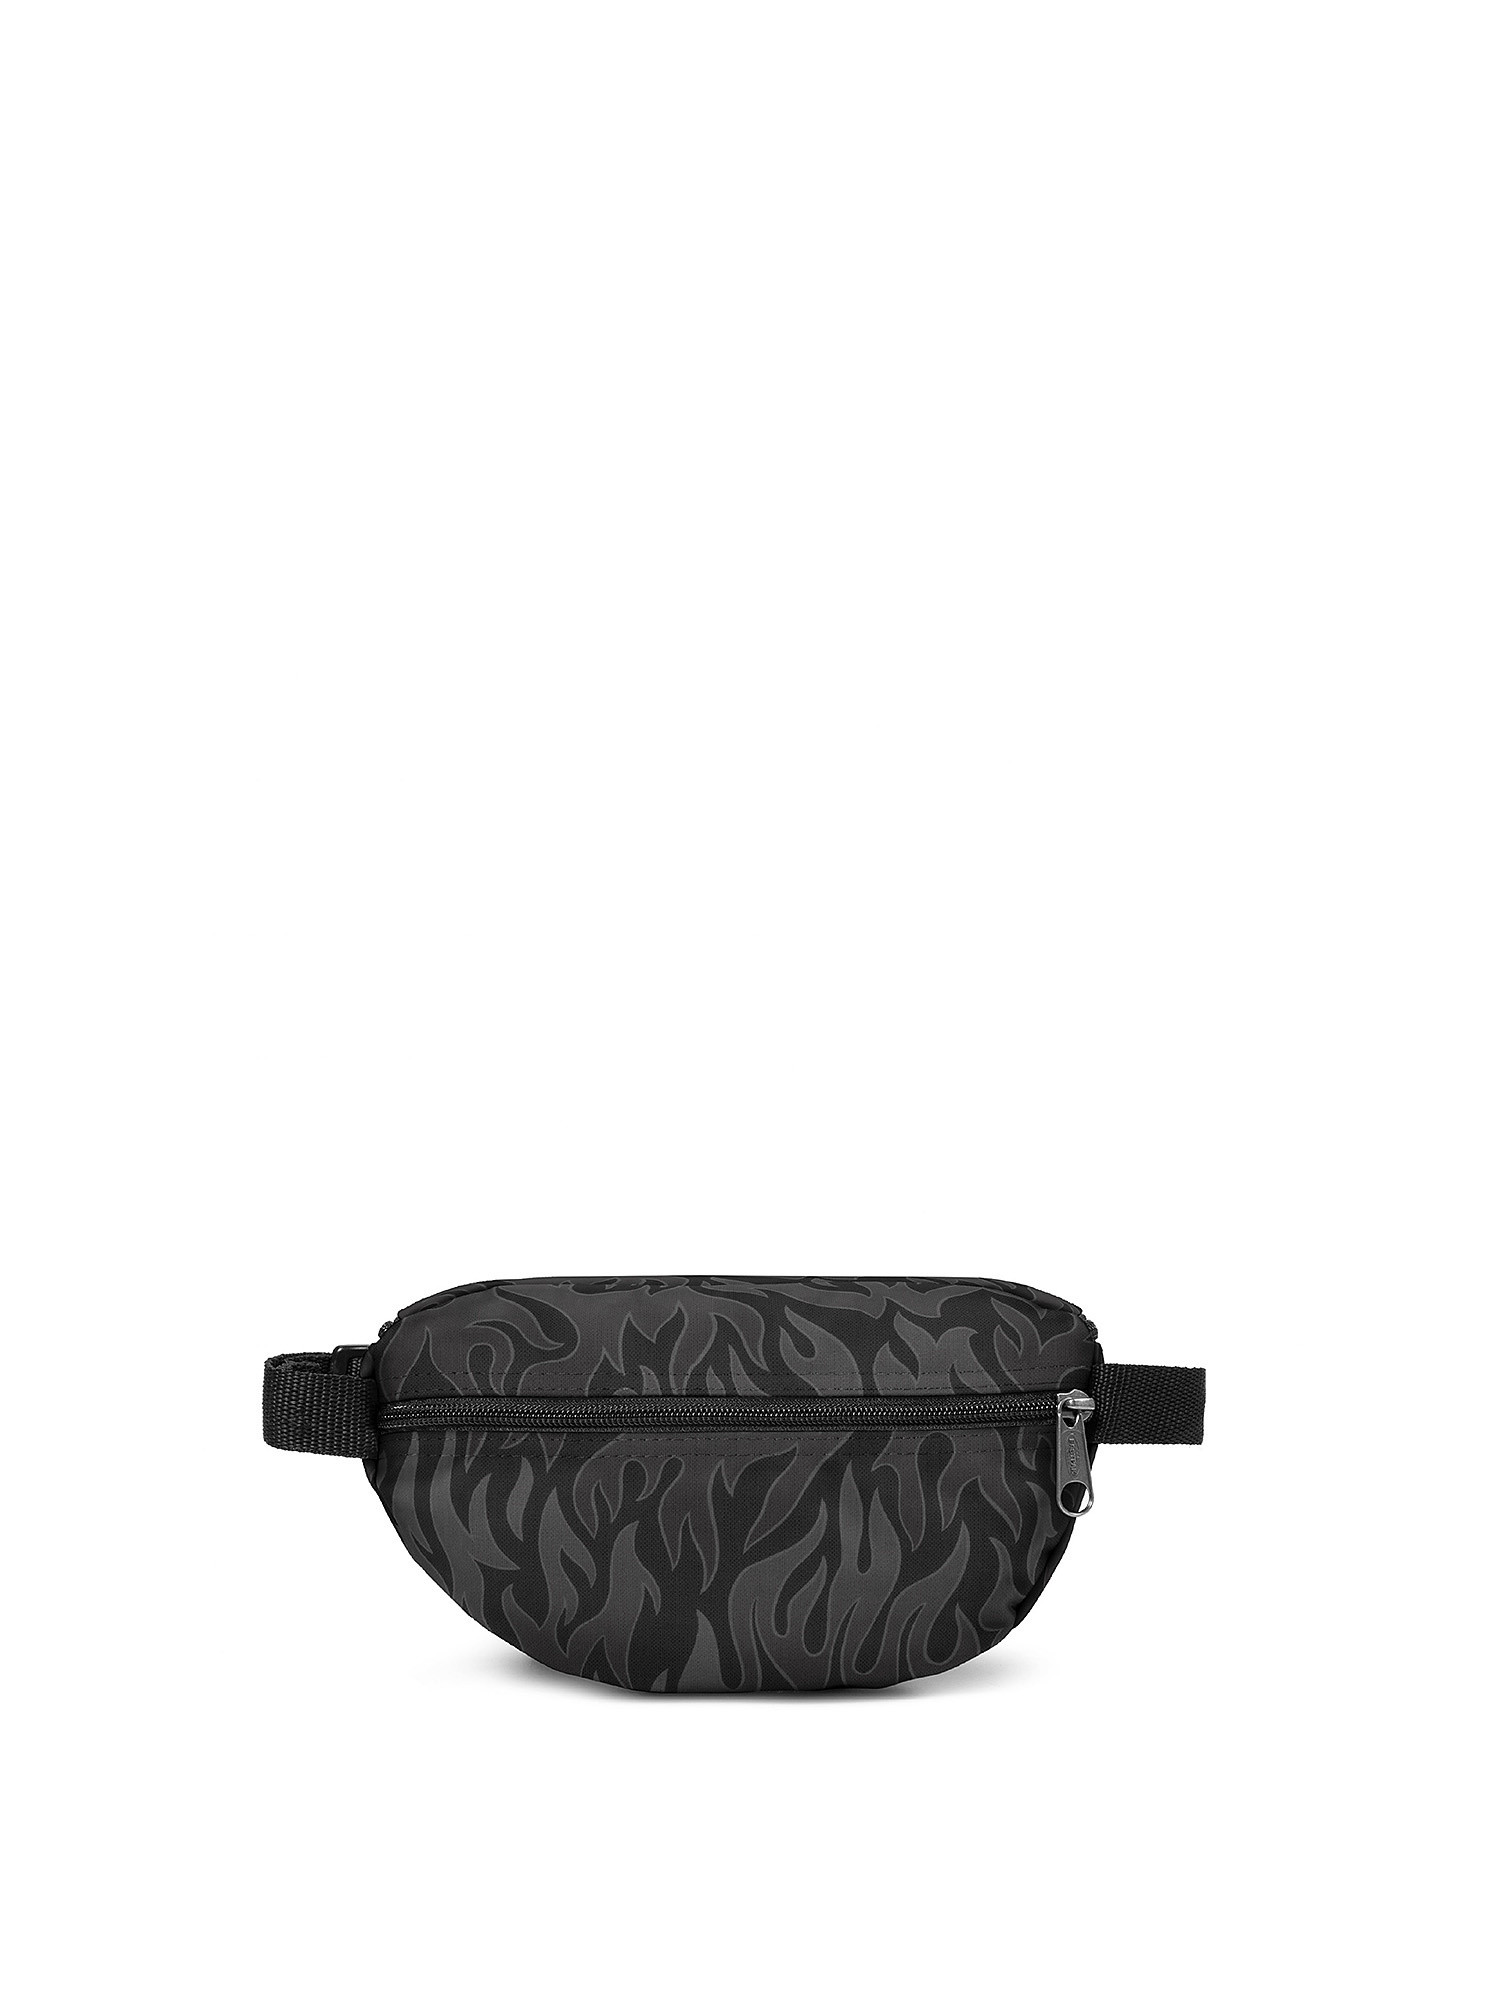 Eastpak - Springer Skate Flames Waist Bag, Black, large image number 1